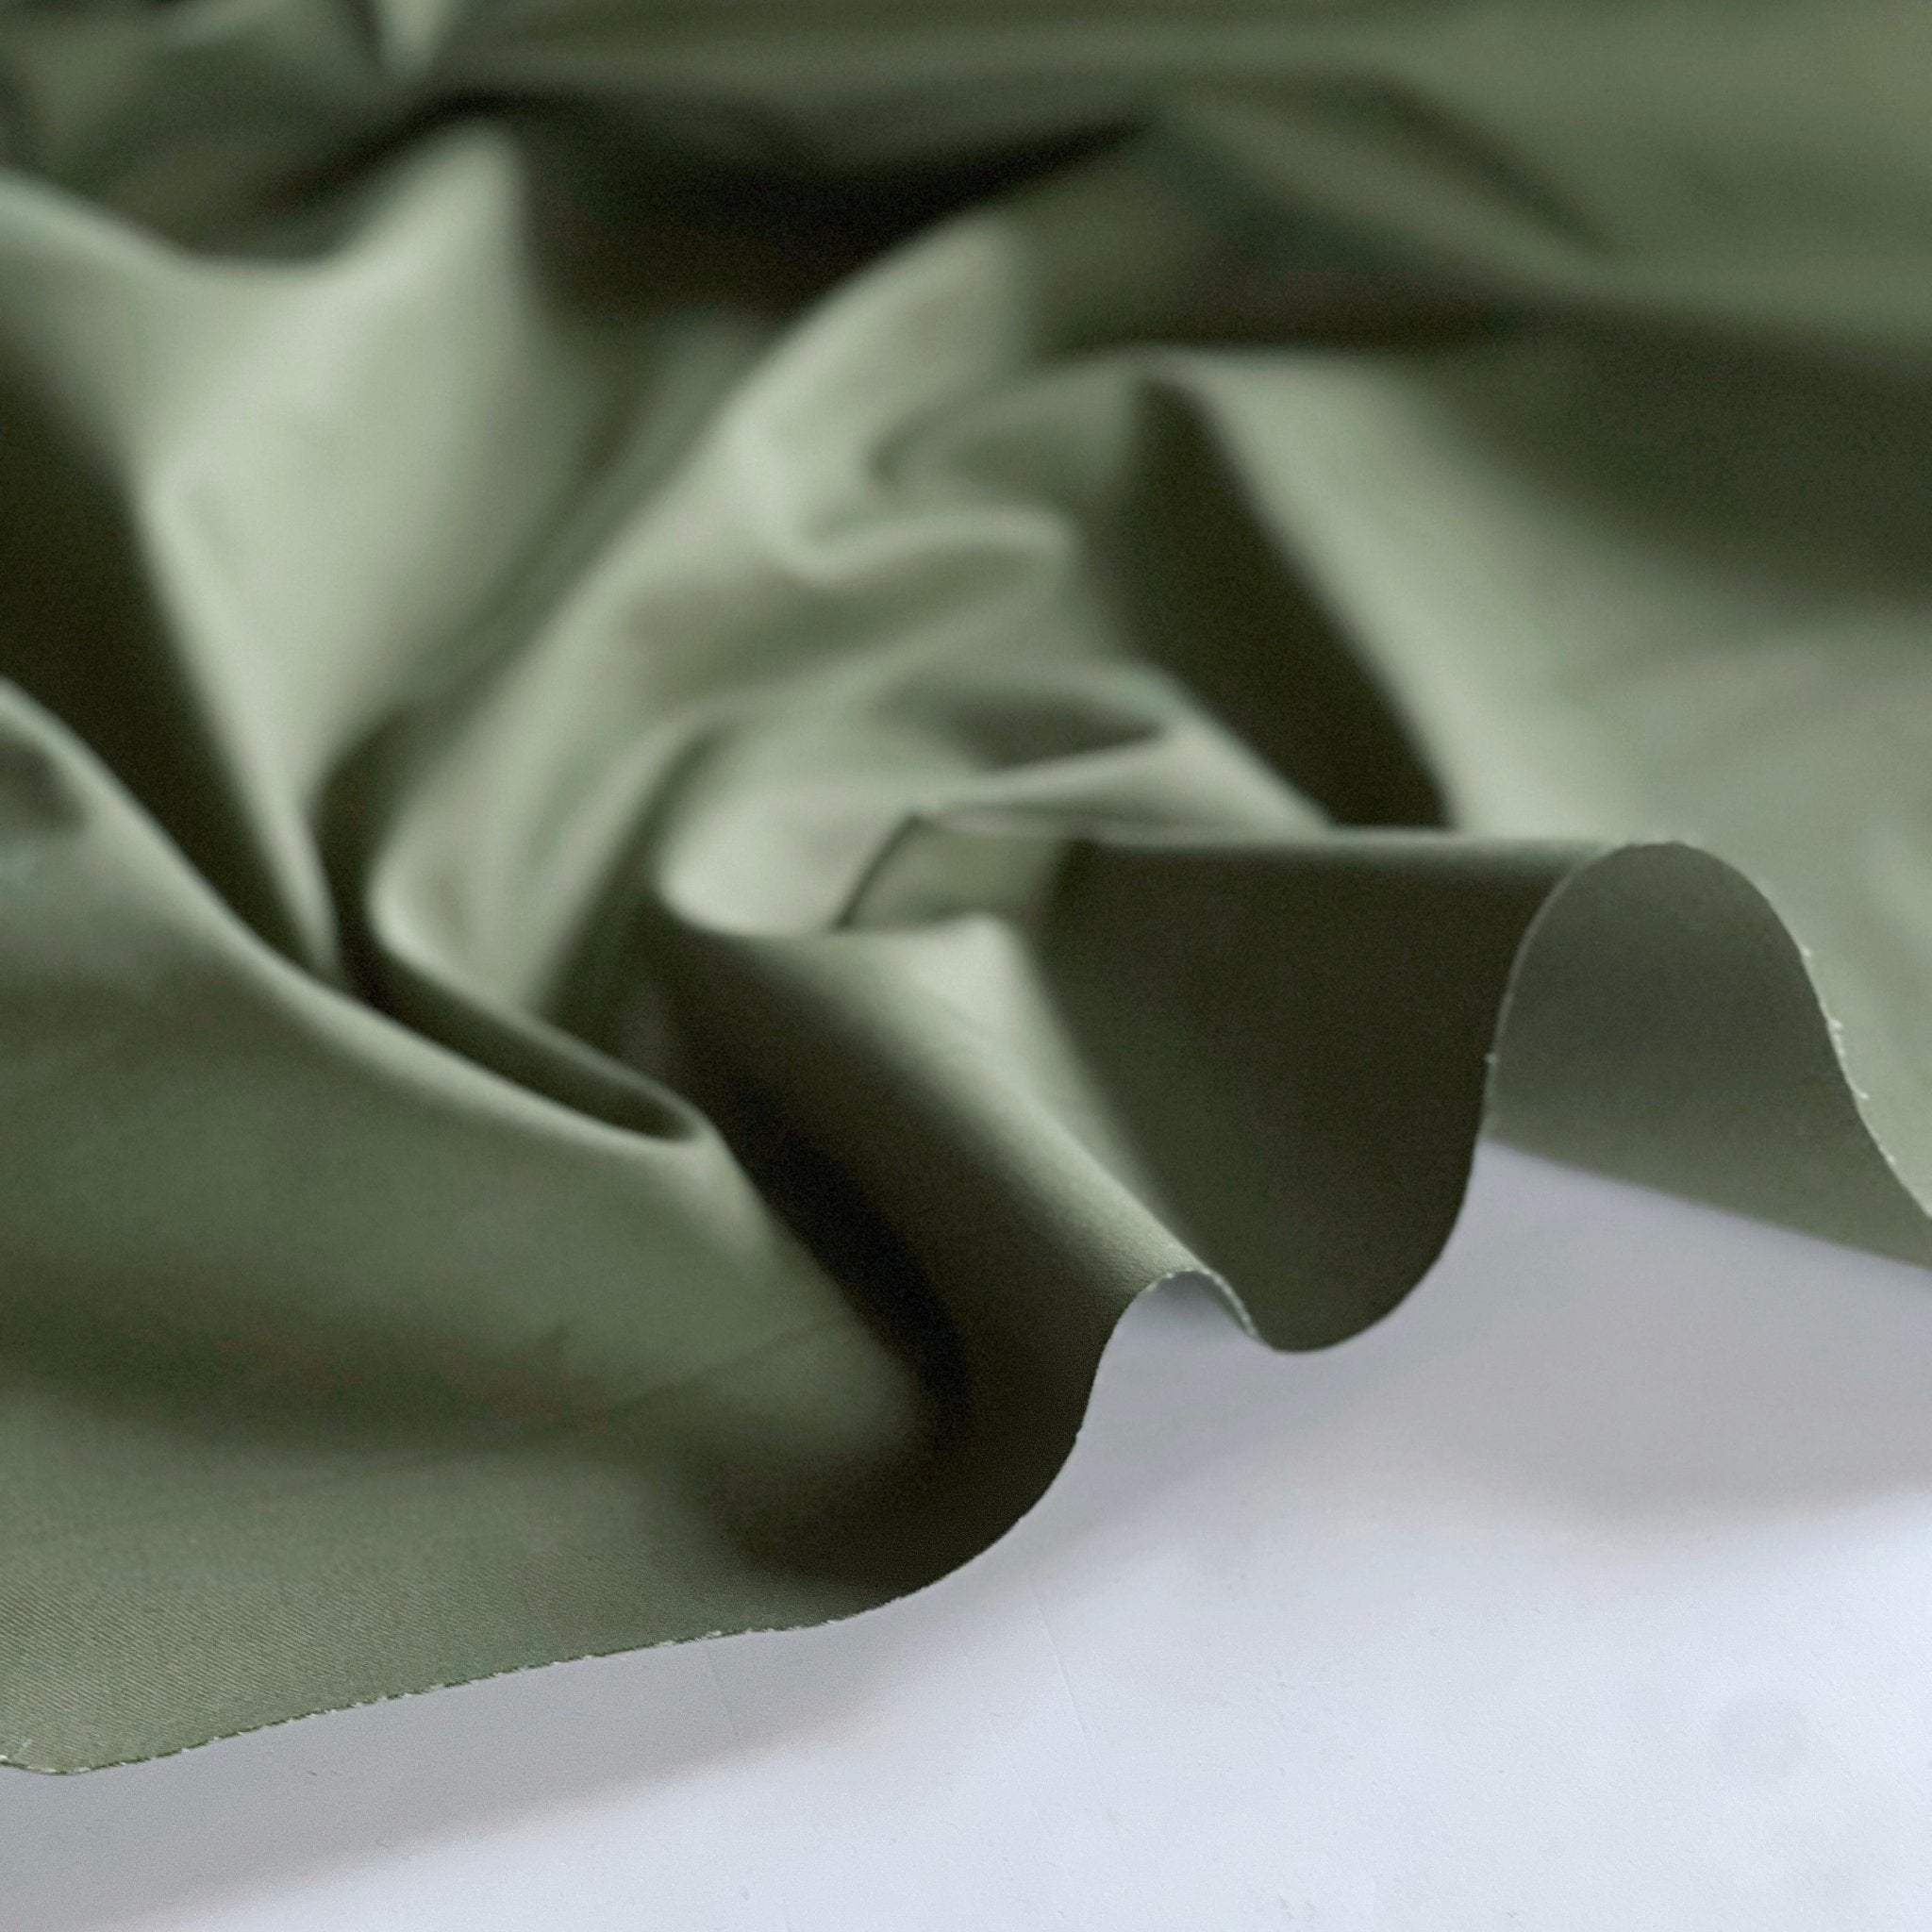 Gree, 100% silk twill fabric